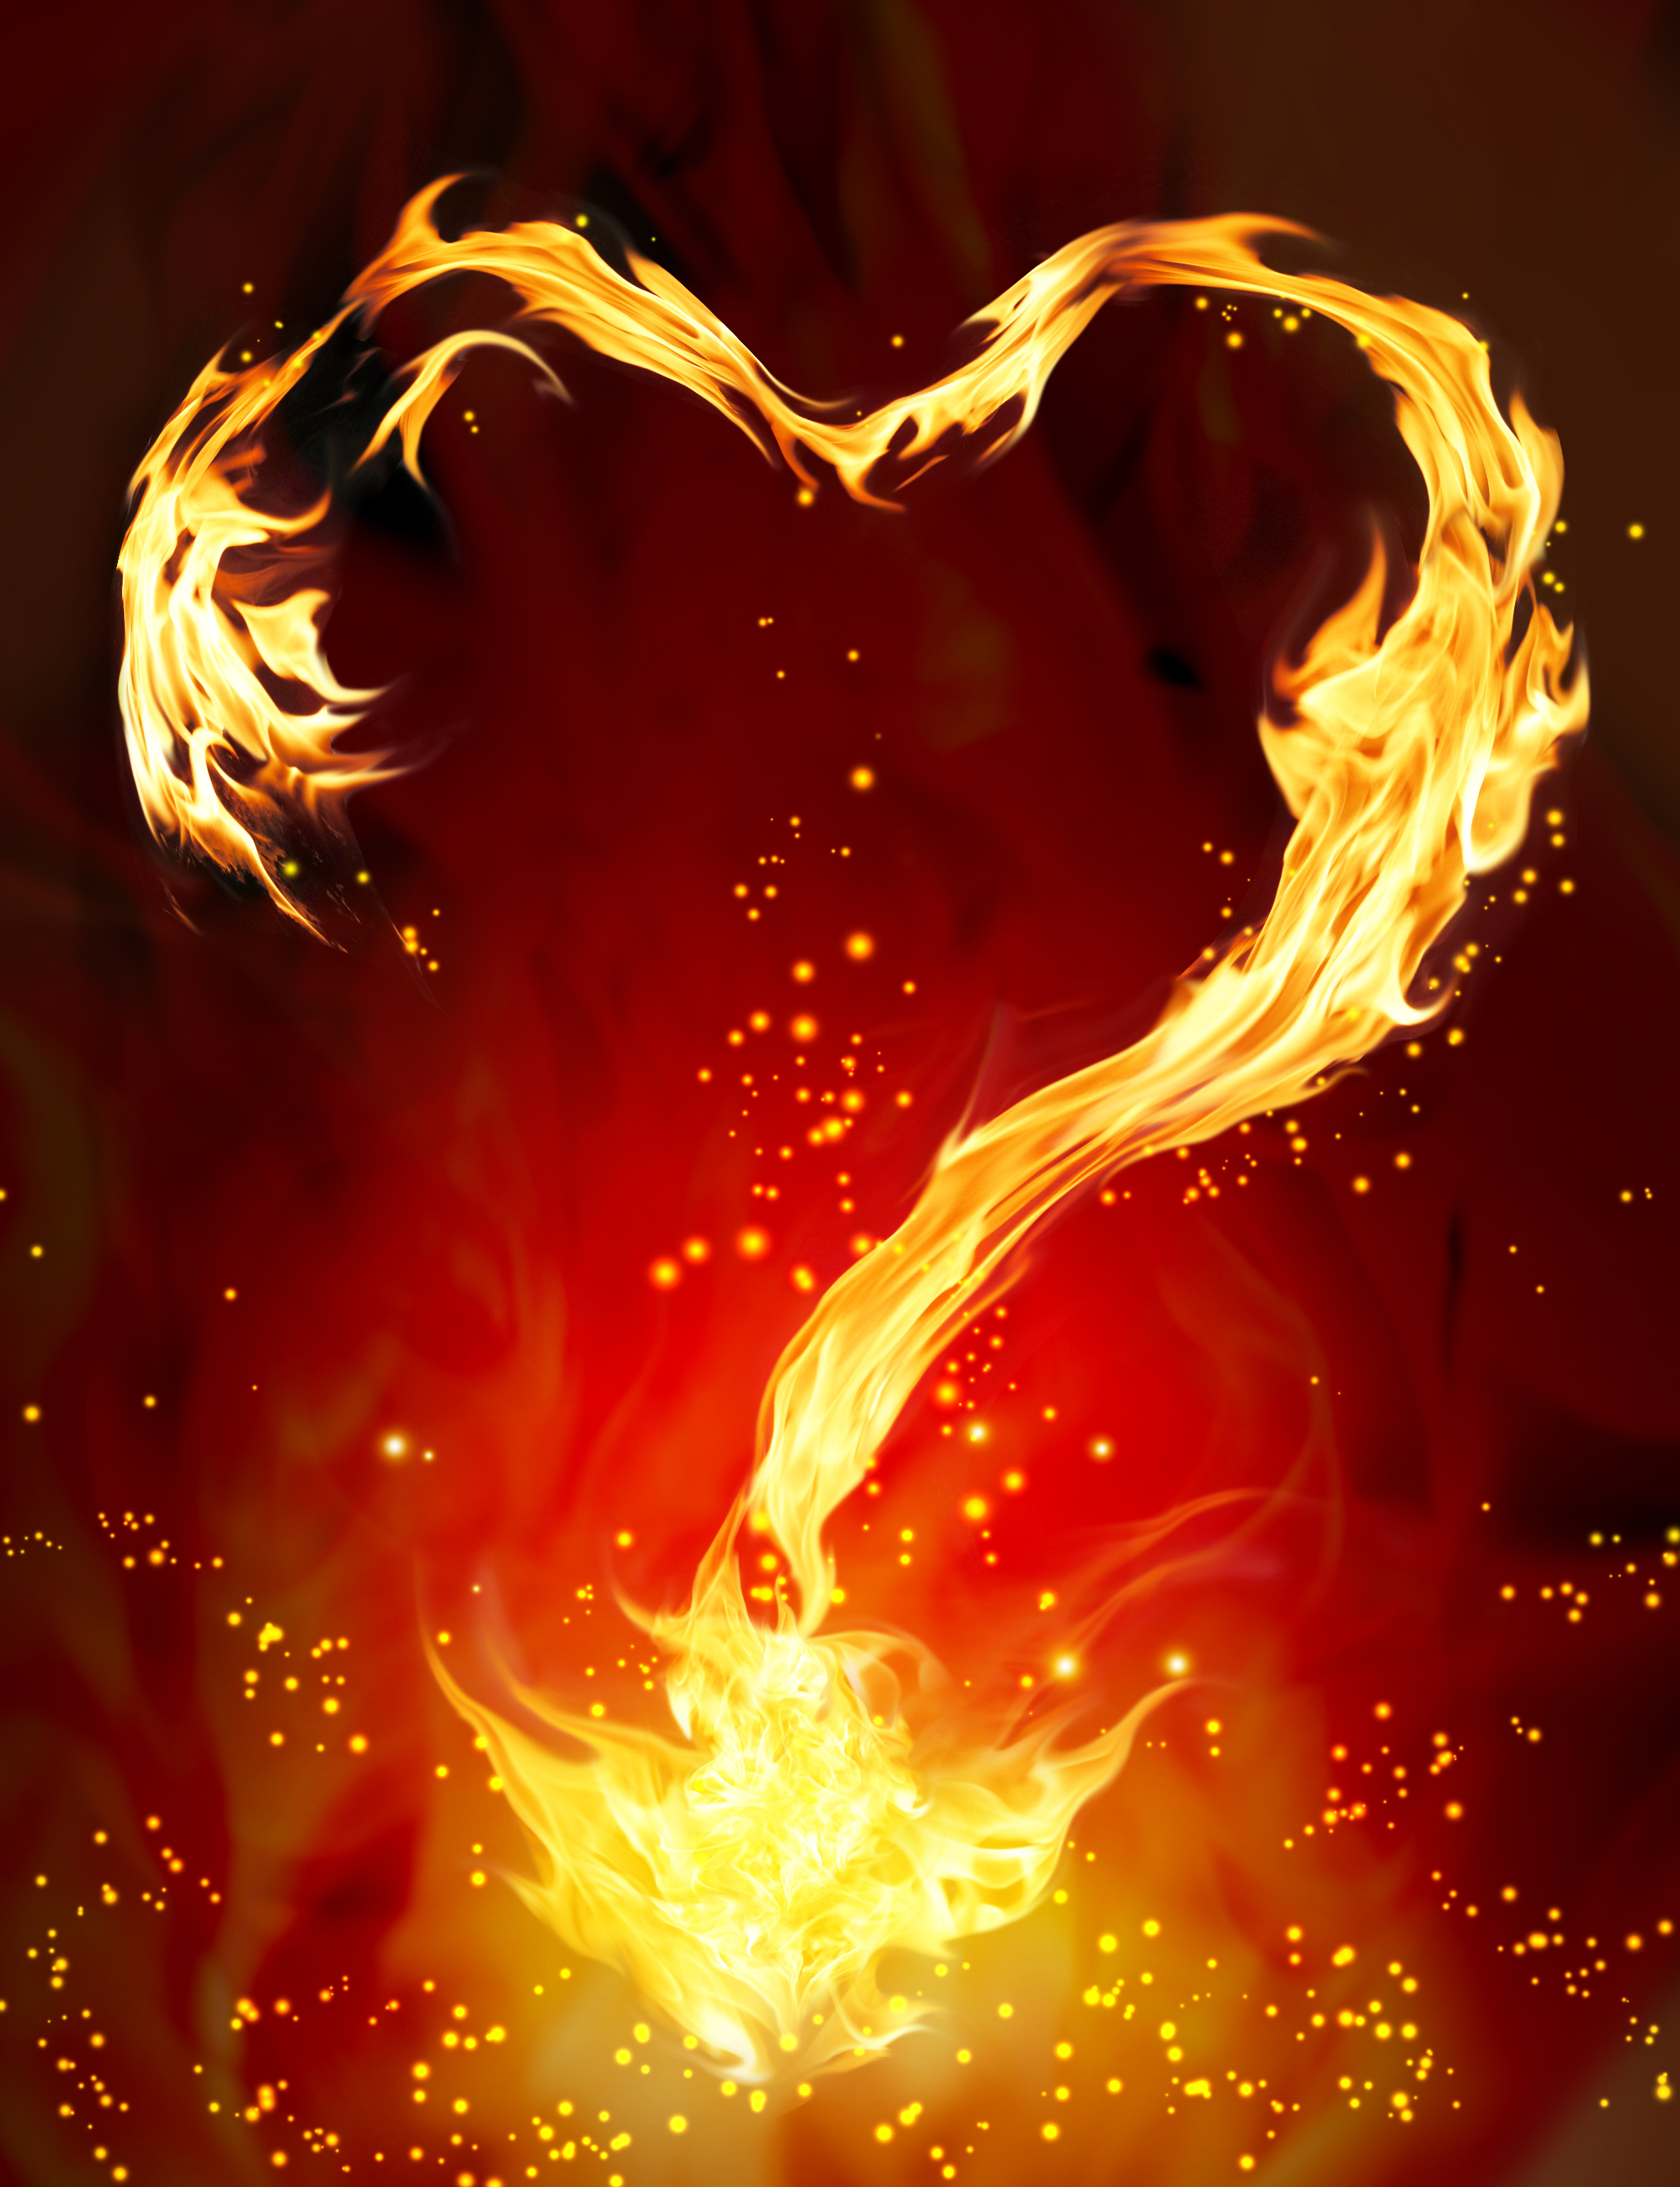 Burning Heart - Loving Relationship Expert